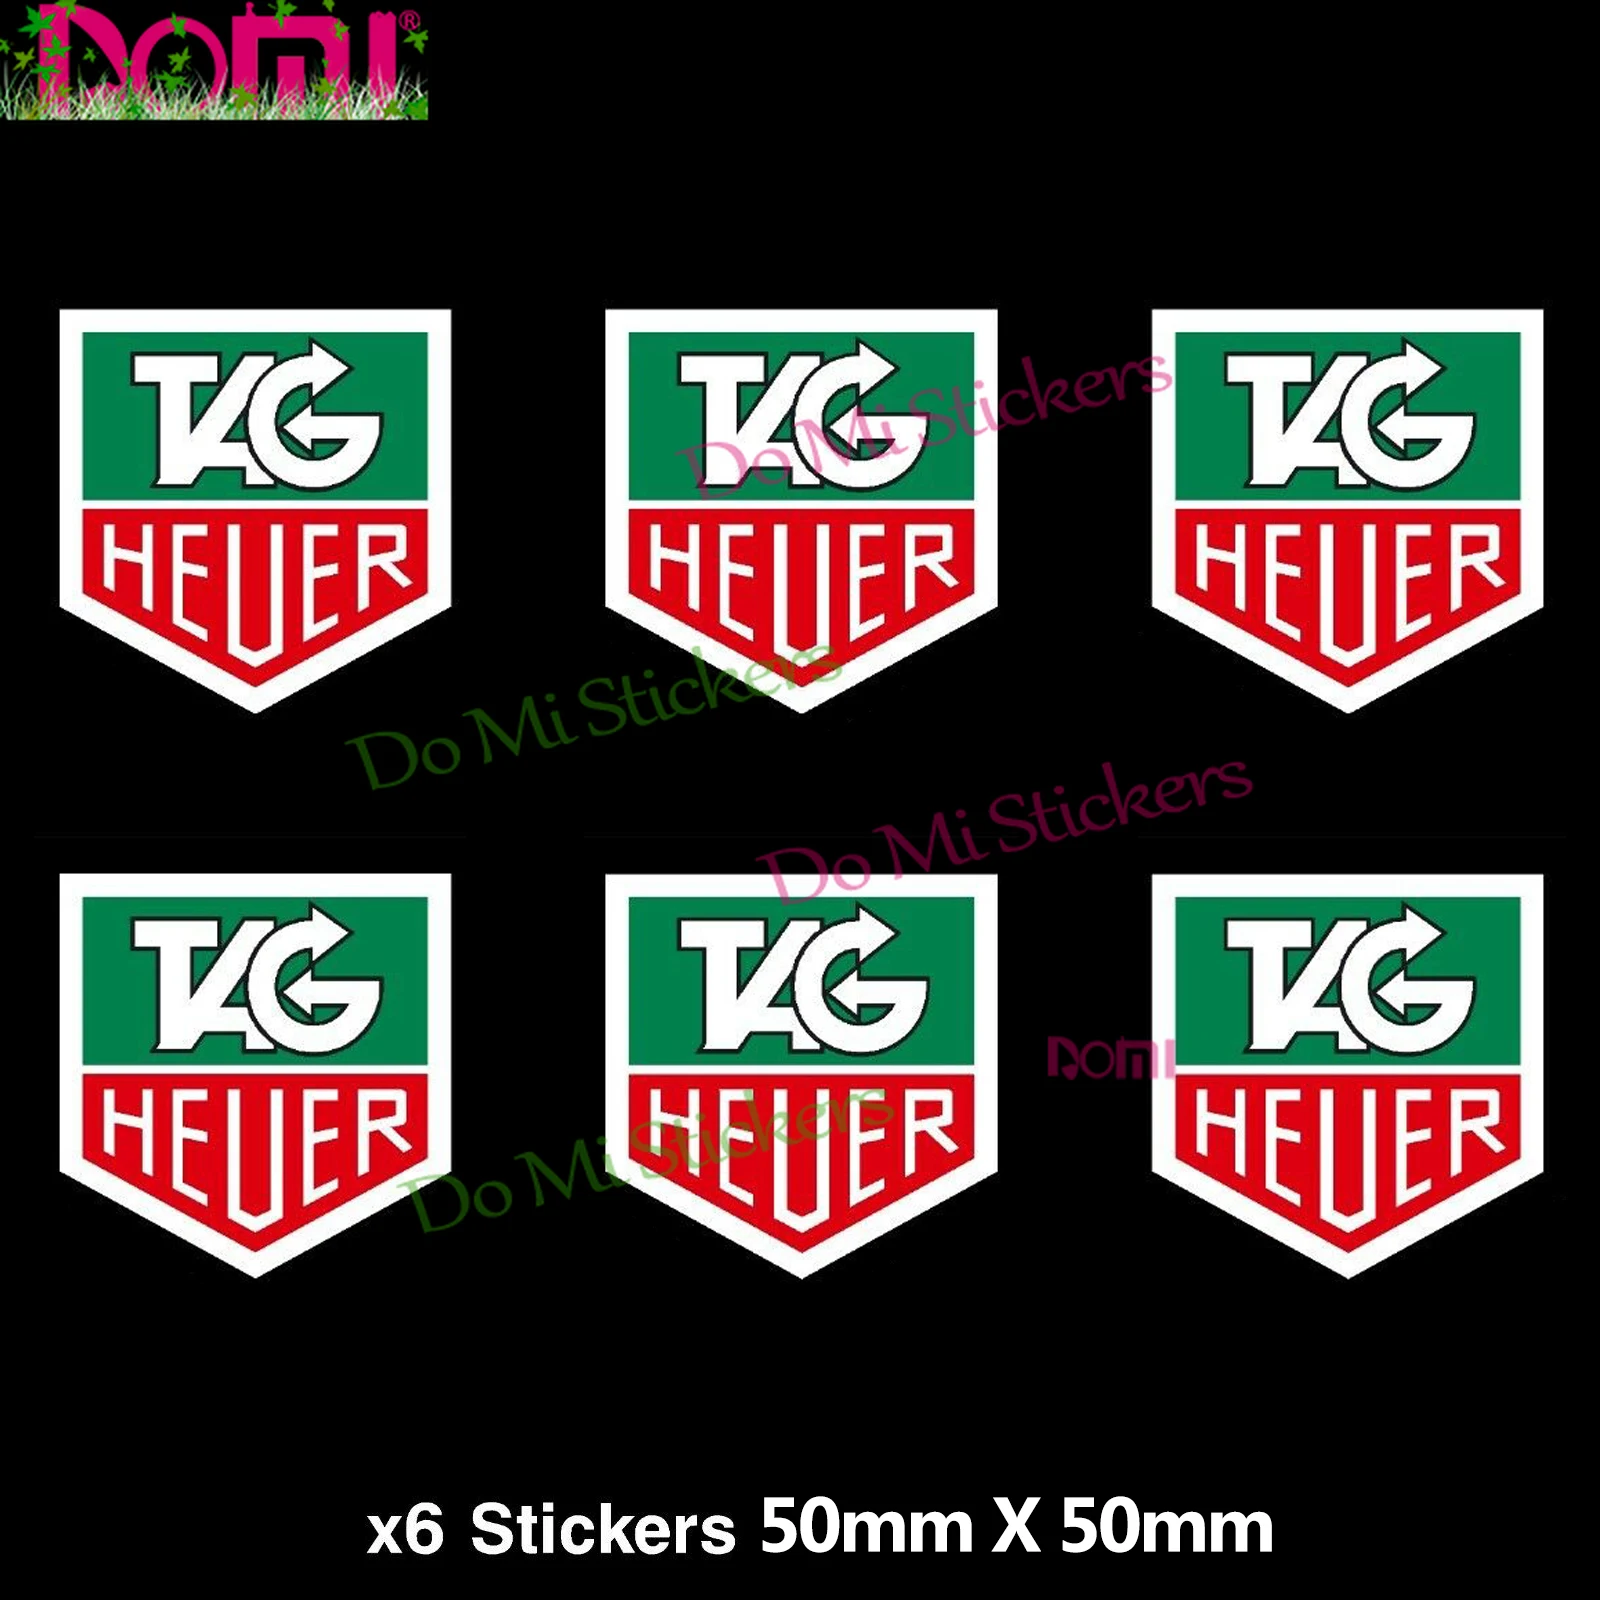 

6x-Tag-Heuer-Stickers---Racing,-Rally,-Lotus,-Ferrari,-Motorcycle,-Helmet